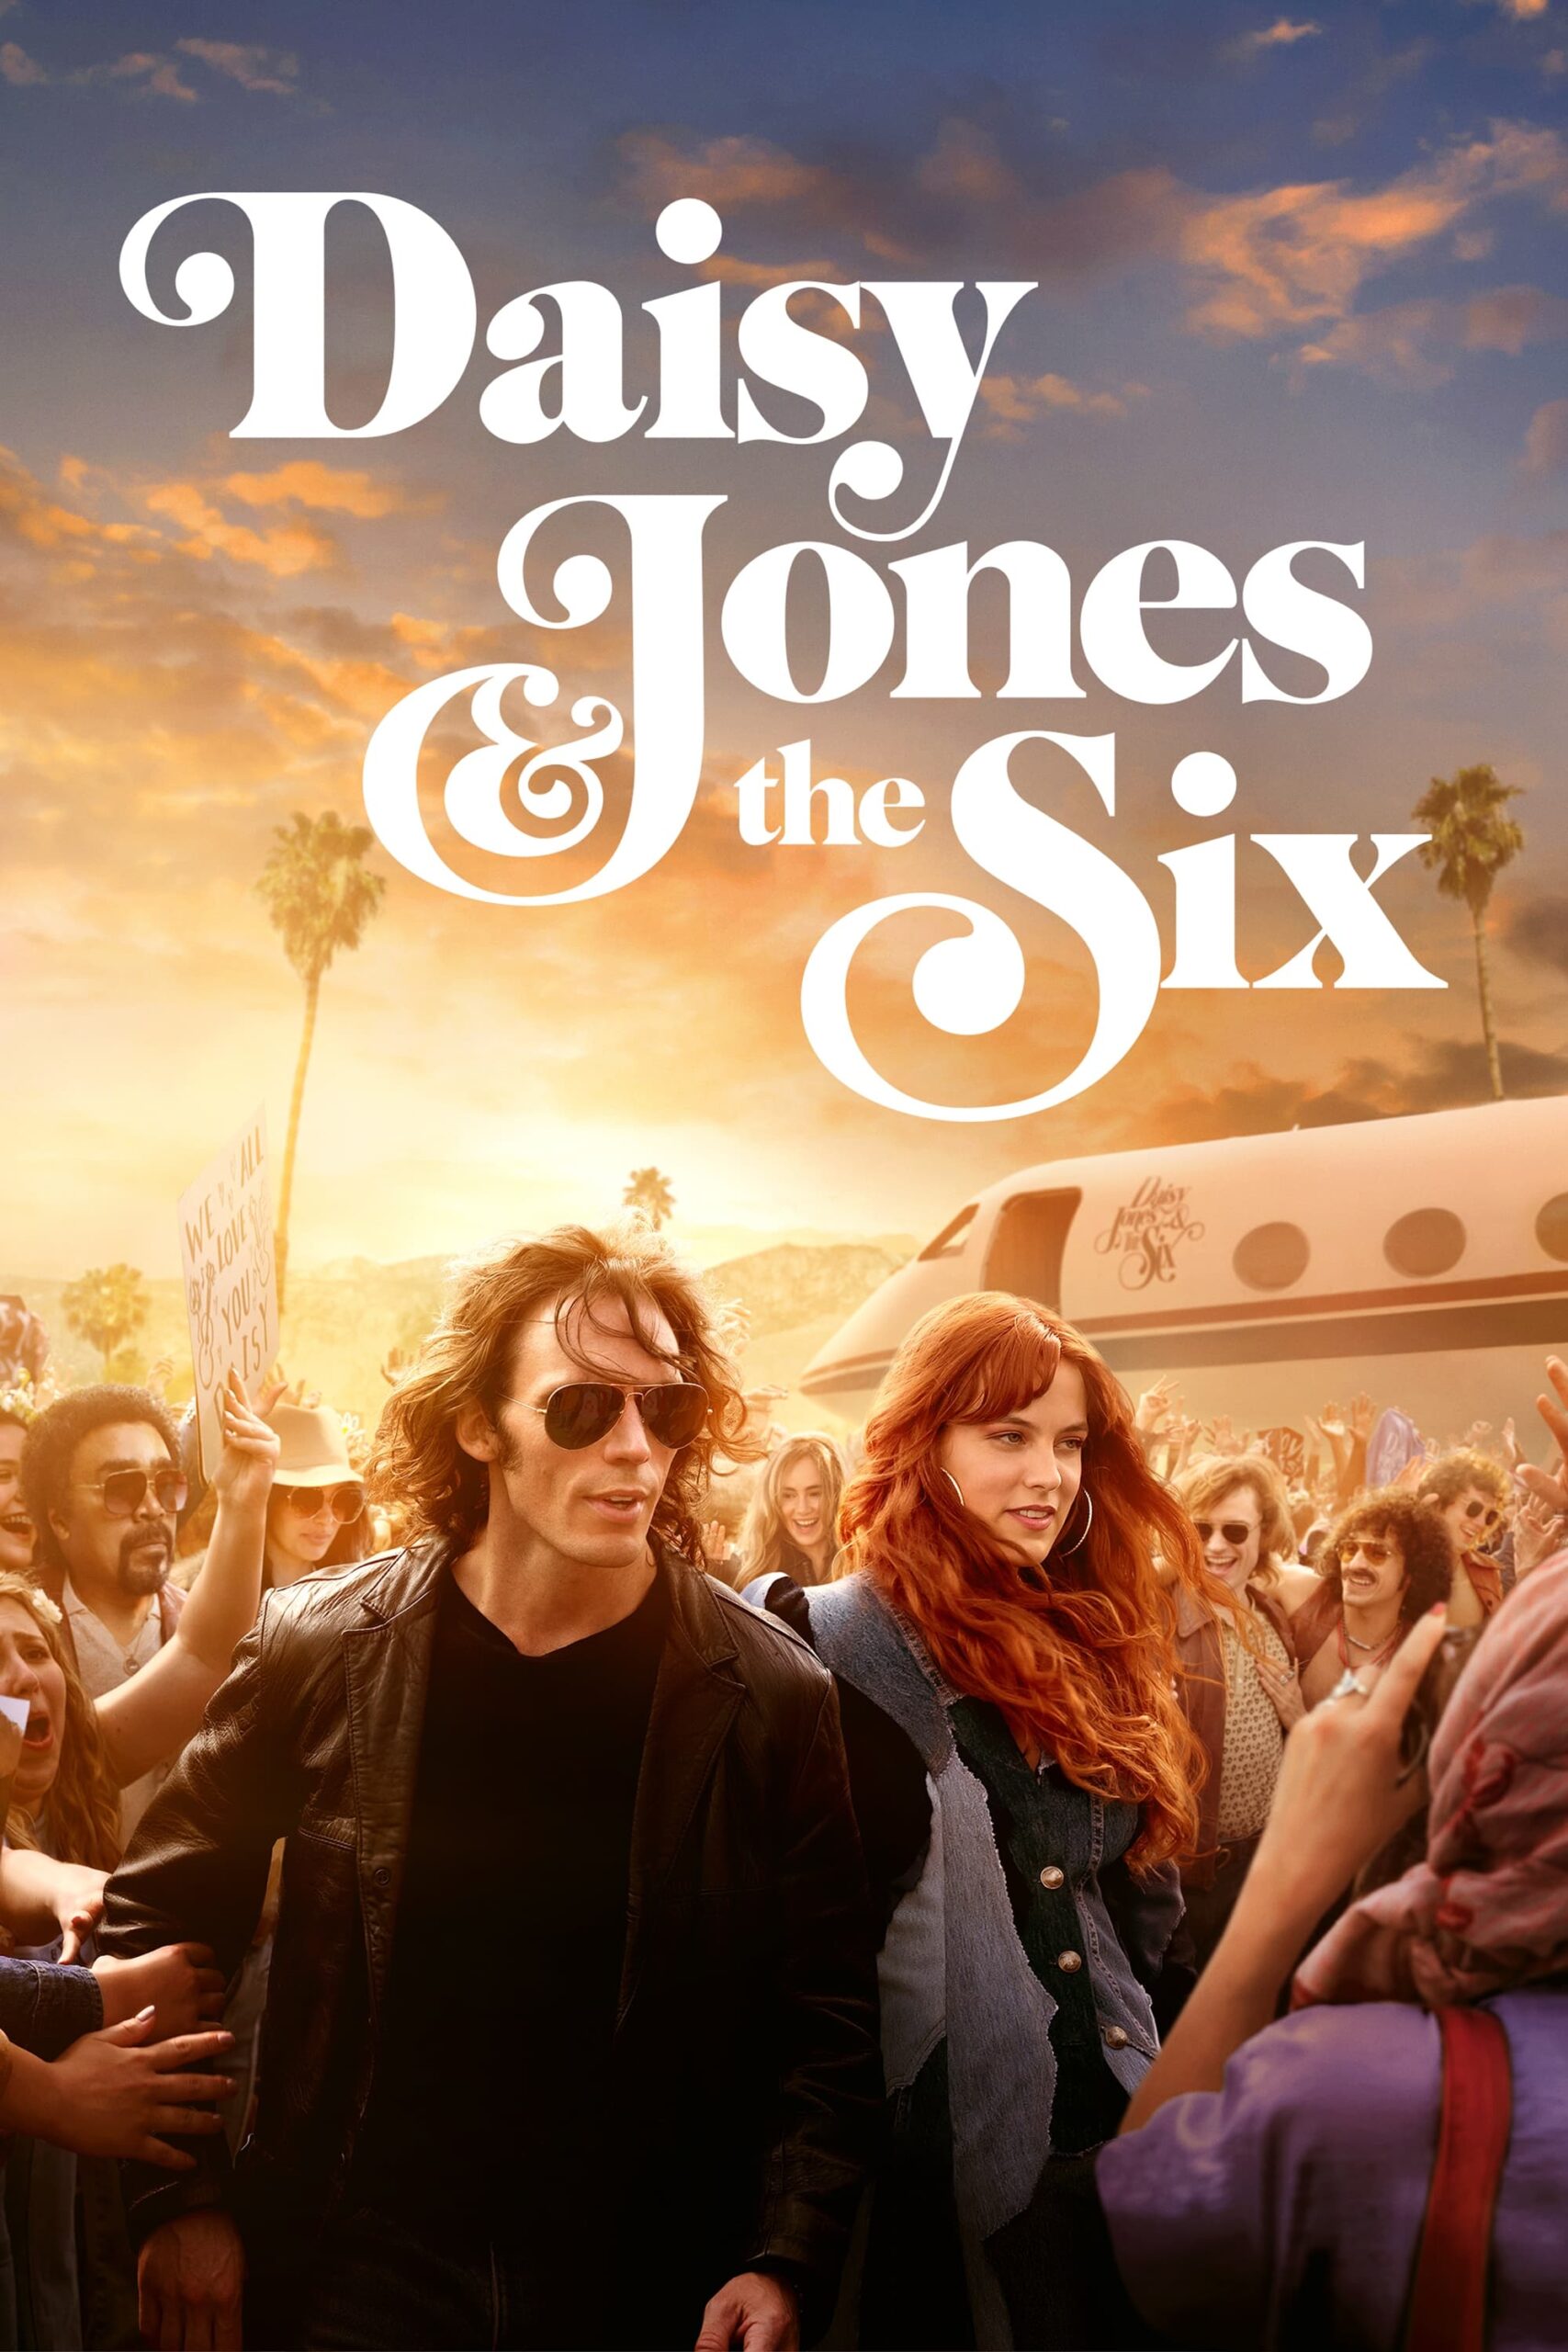 دیزی جونز و شش نفر (Daisy Jones & The Six)